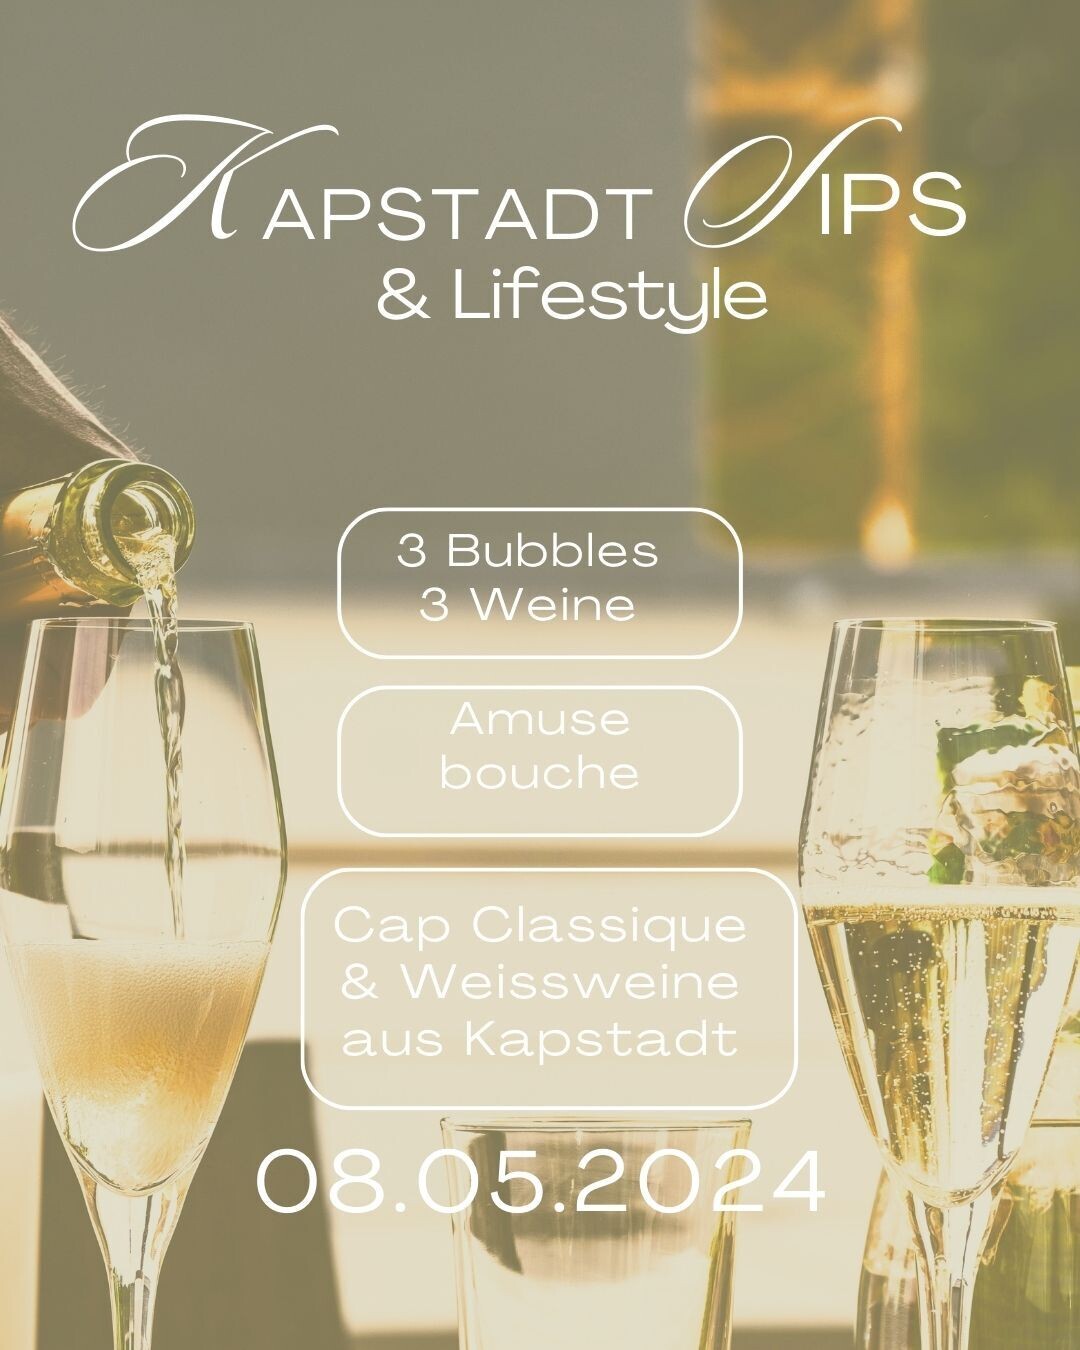 Kapstadt Sips &amp; Lifestyle 🍾
Huginn Stuttgart